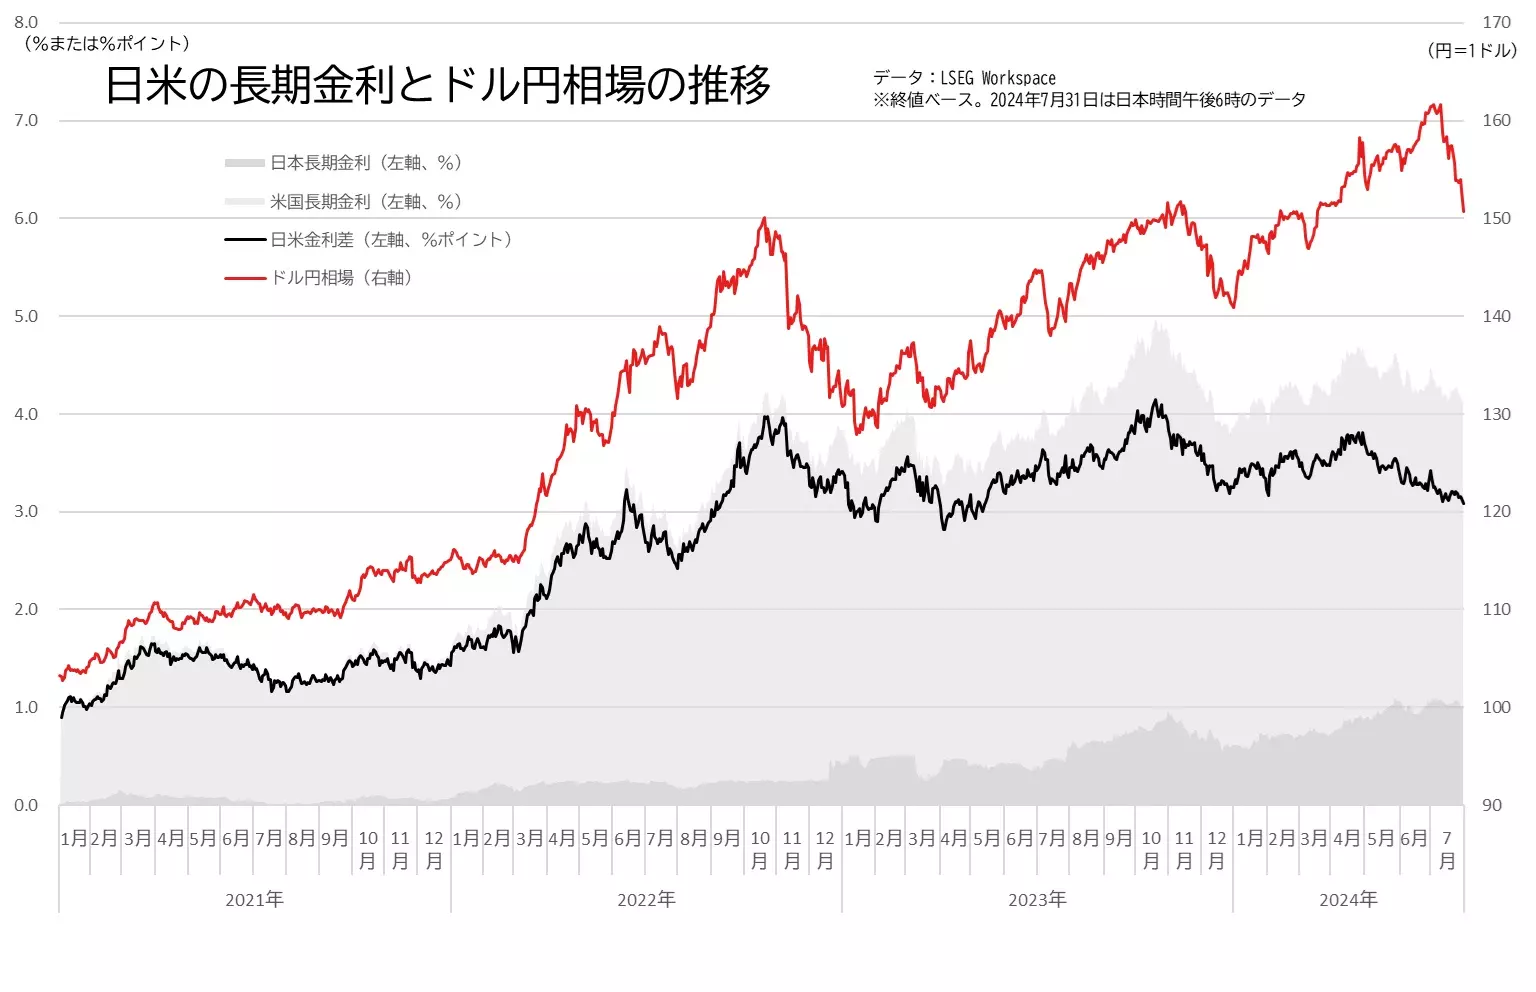 日米の長期金利の差とドル円相場の推移のグラフ